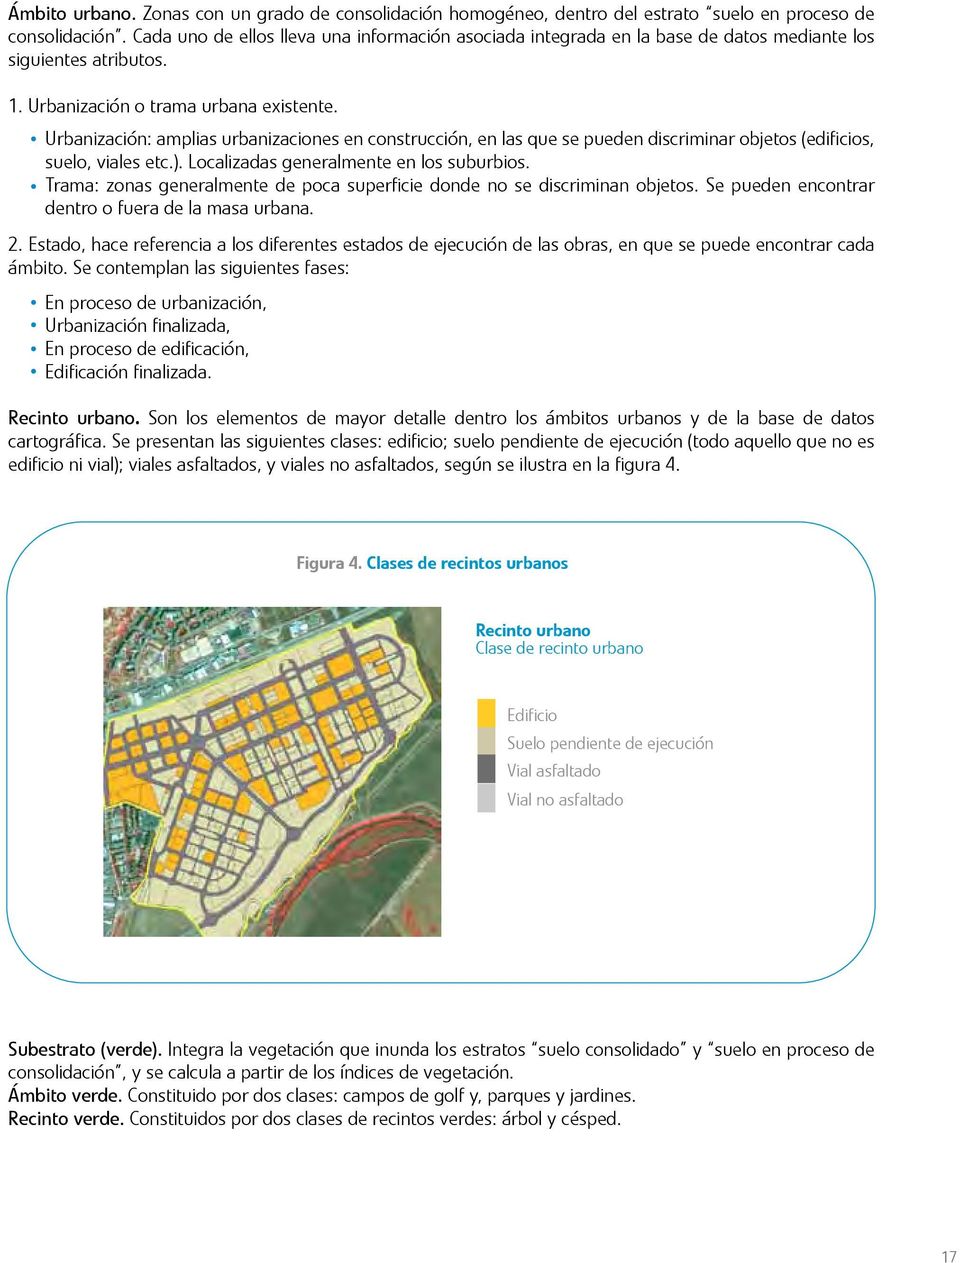 Urbanización: amplias urbanizaciones en construcción, en las que se pueden discriminar objetos (edificios, suelo, viales etc.). Localizadas generalmente en los suburbios.